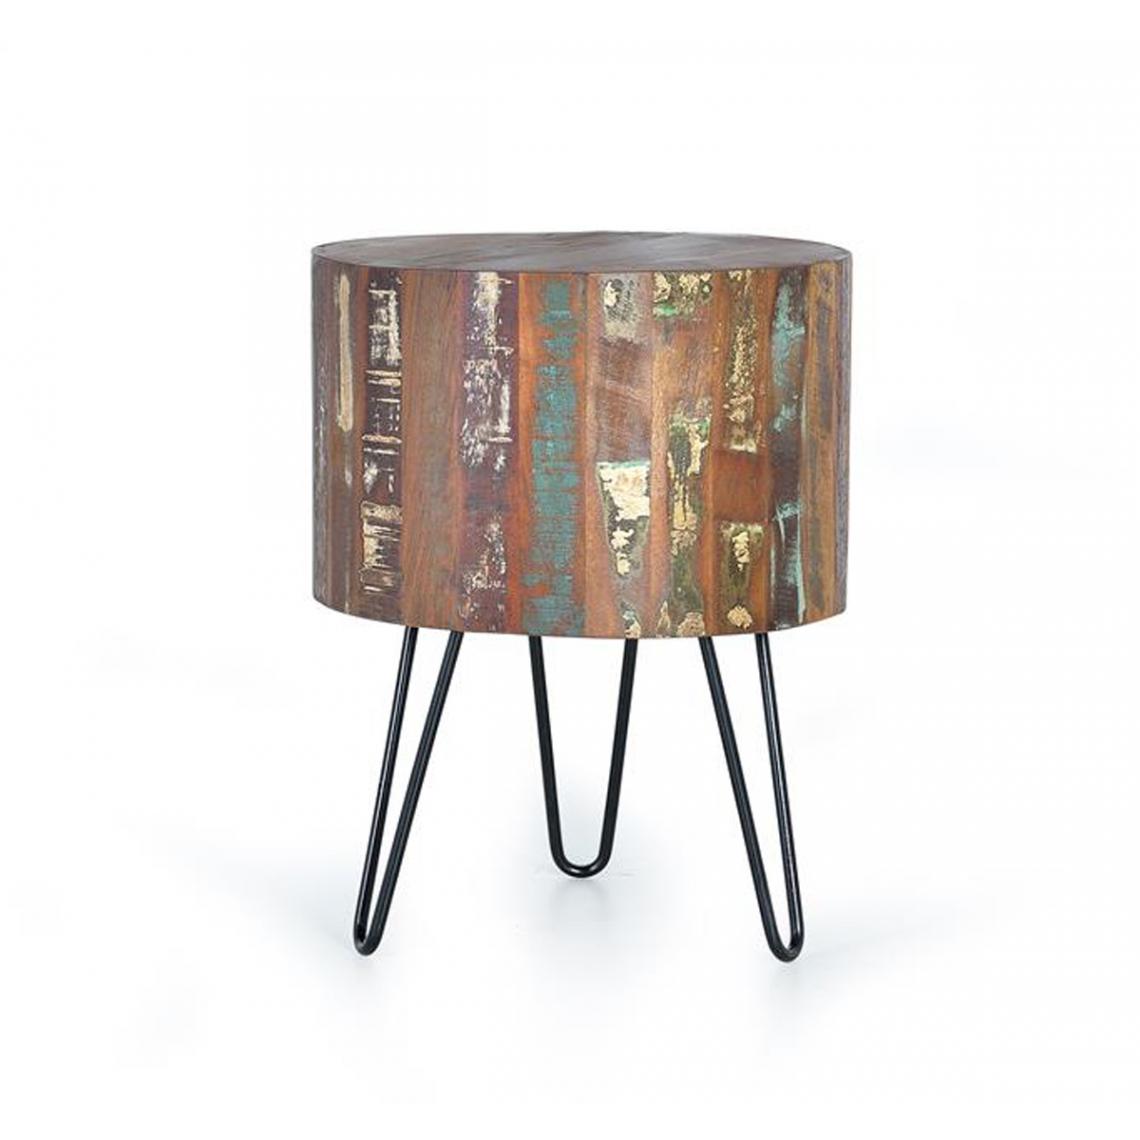 Pegane - Table basse en bois recyclé et métal multicolore - diamètre 46 x hauteur 60 cm - Tables basses